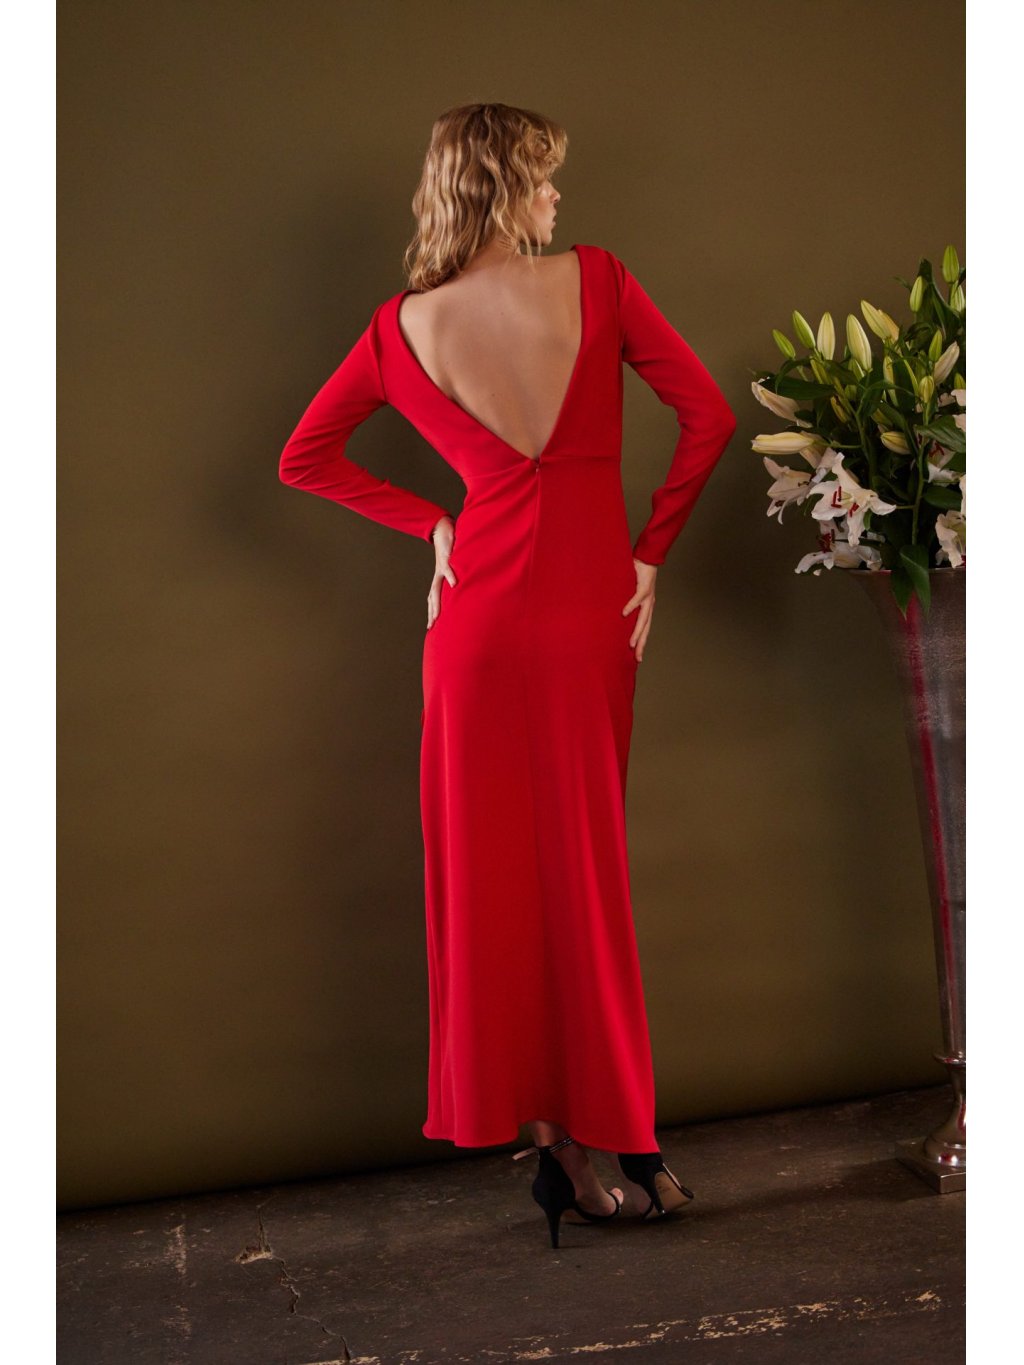 Šaty Tova Virgo červené dlouhé s odhalenými zády